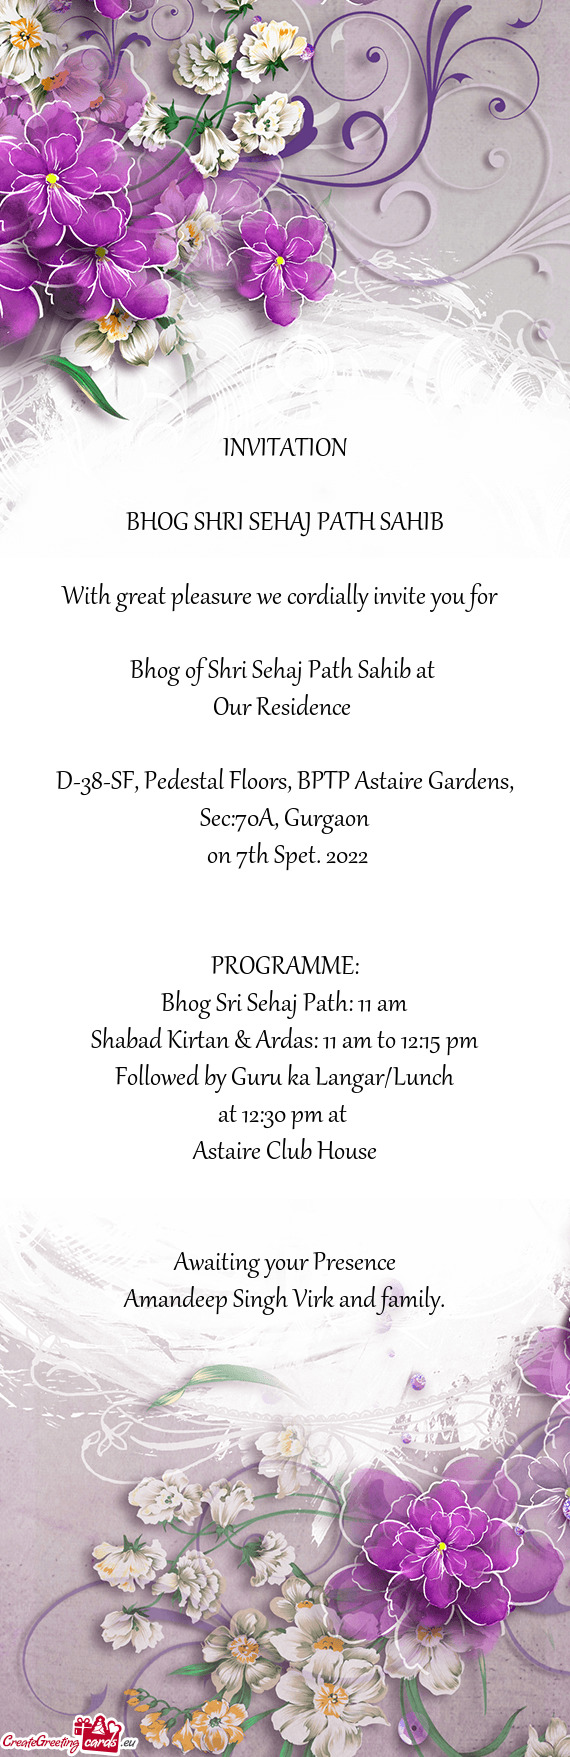 D-38-SF, Pedestal Floors, BPTP Astaire Gardens, Sec:70A, Gurgaon